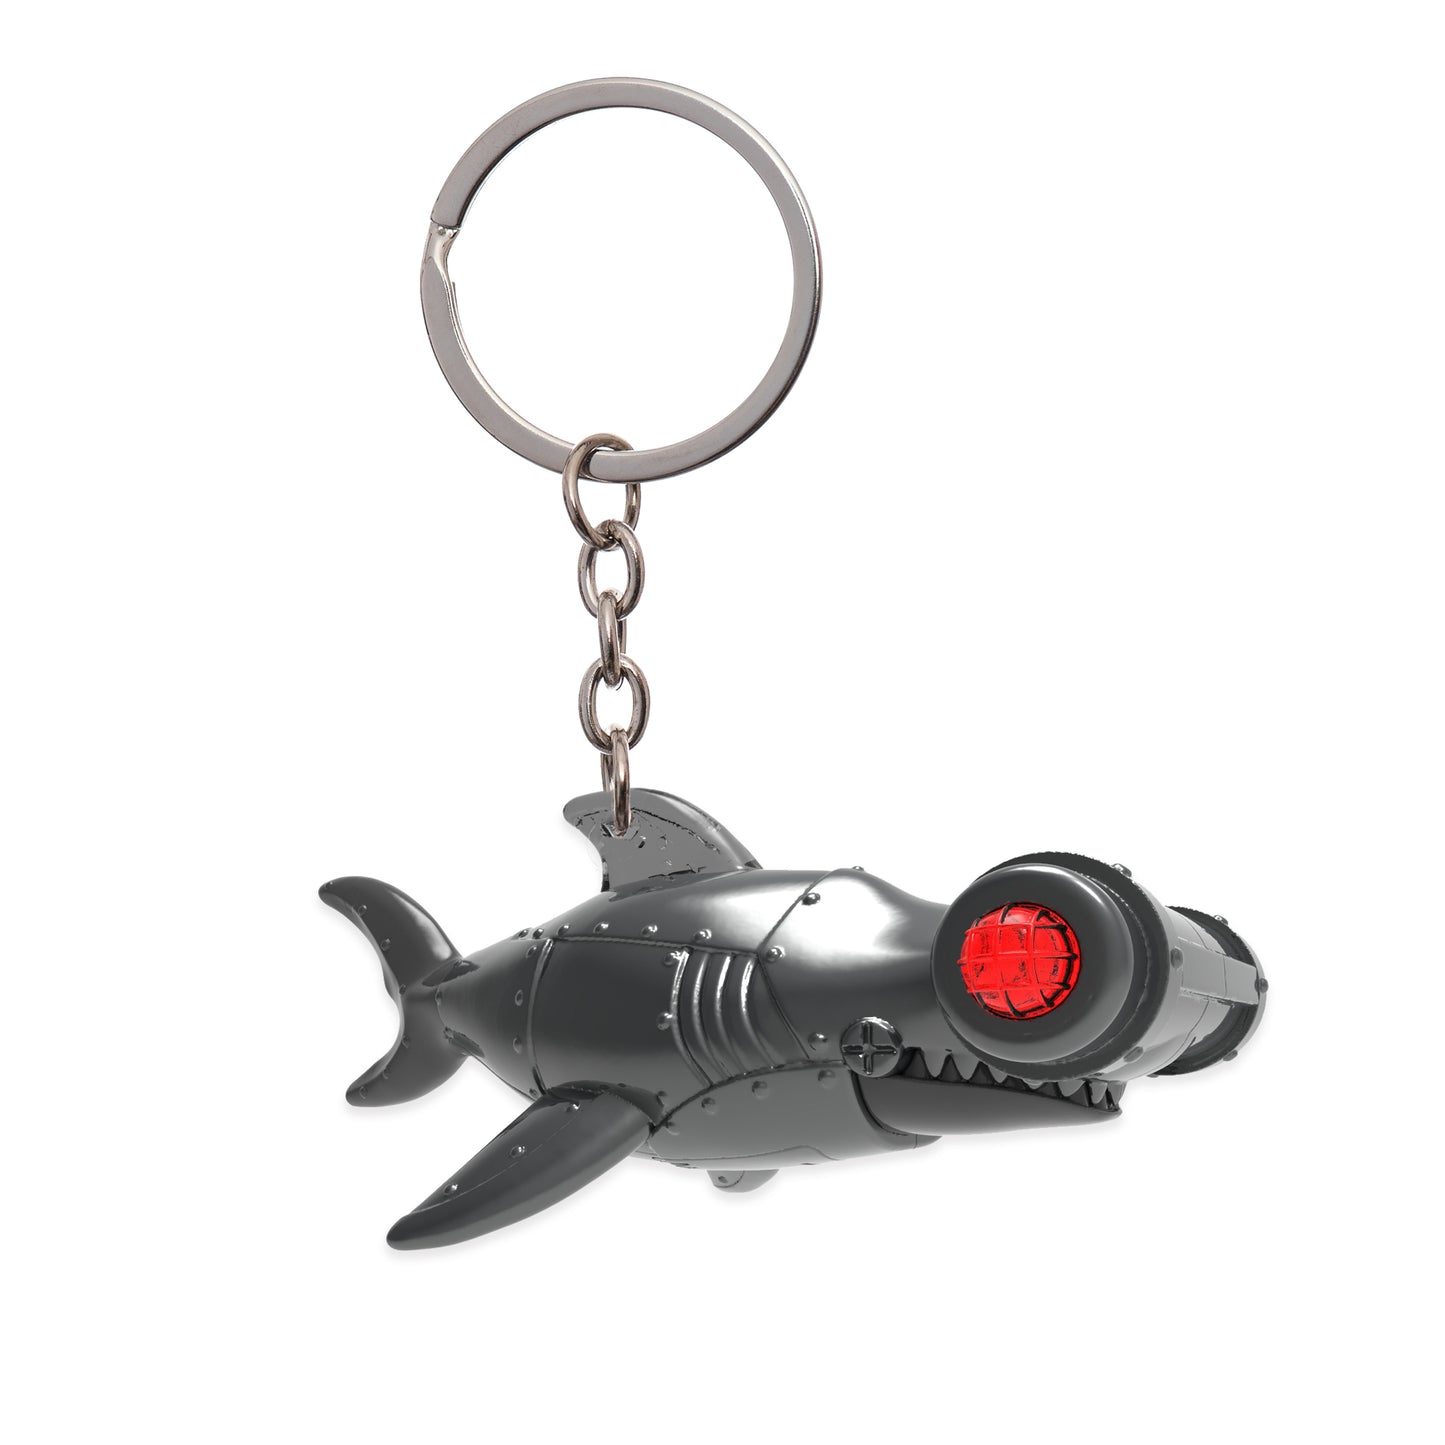 Armored LED Hammer Head Shark Key Chain